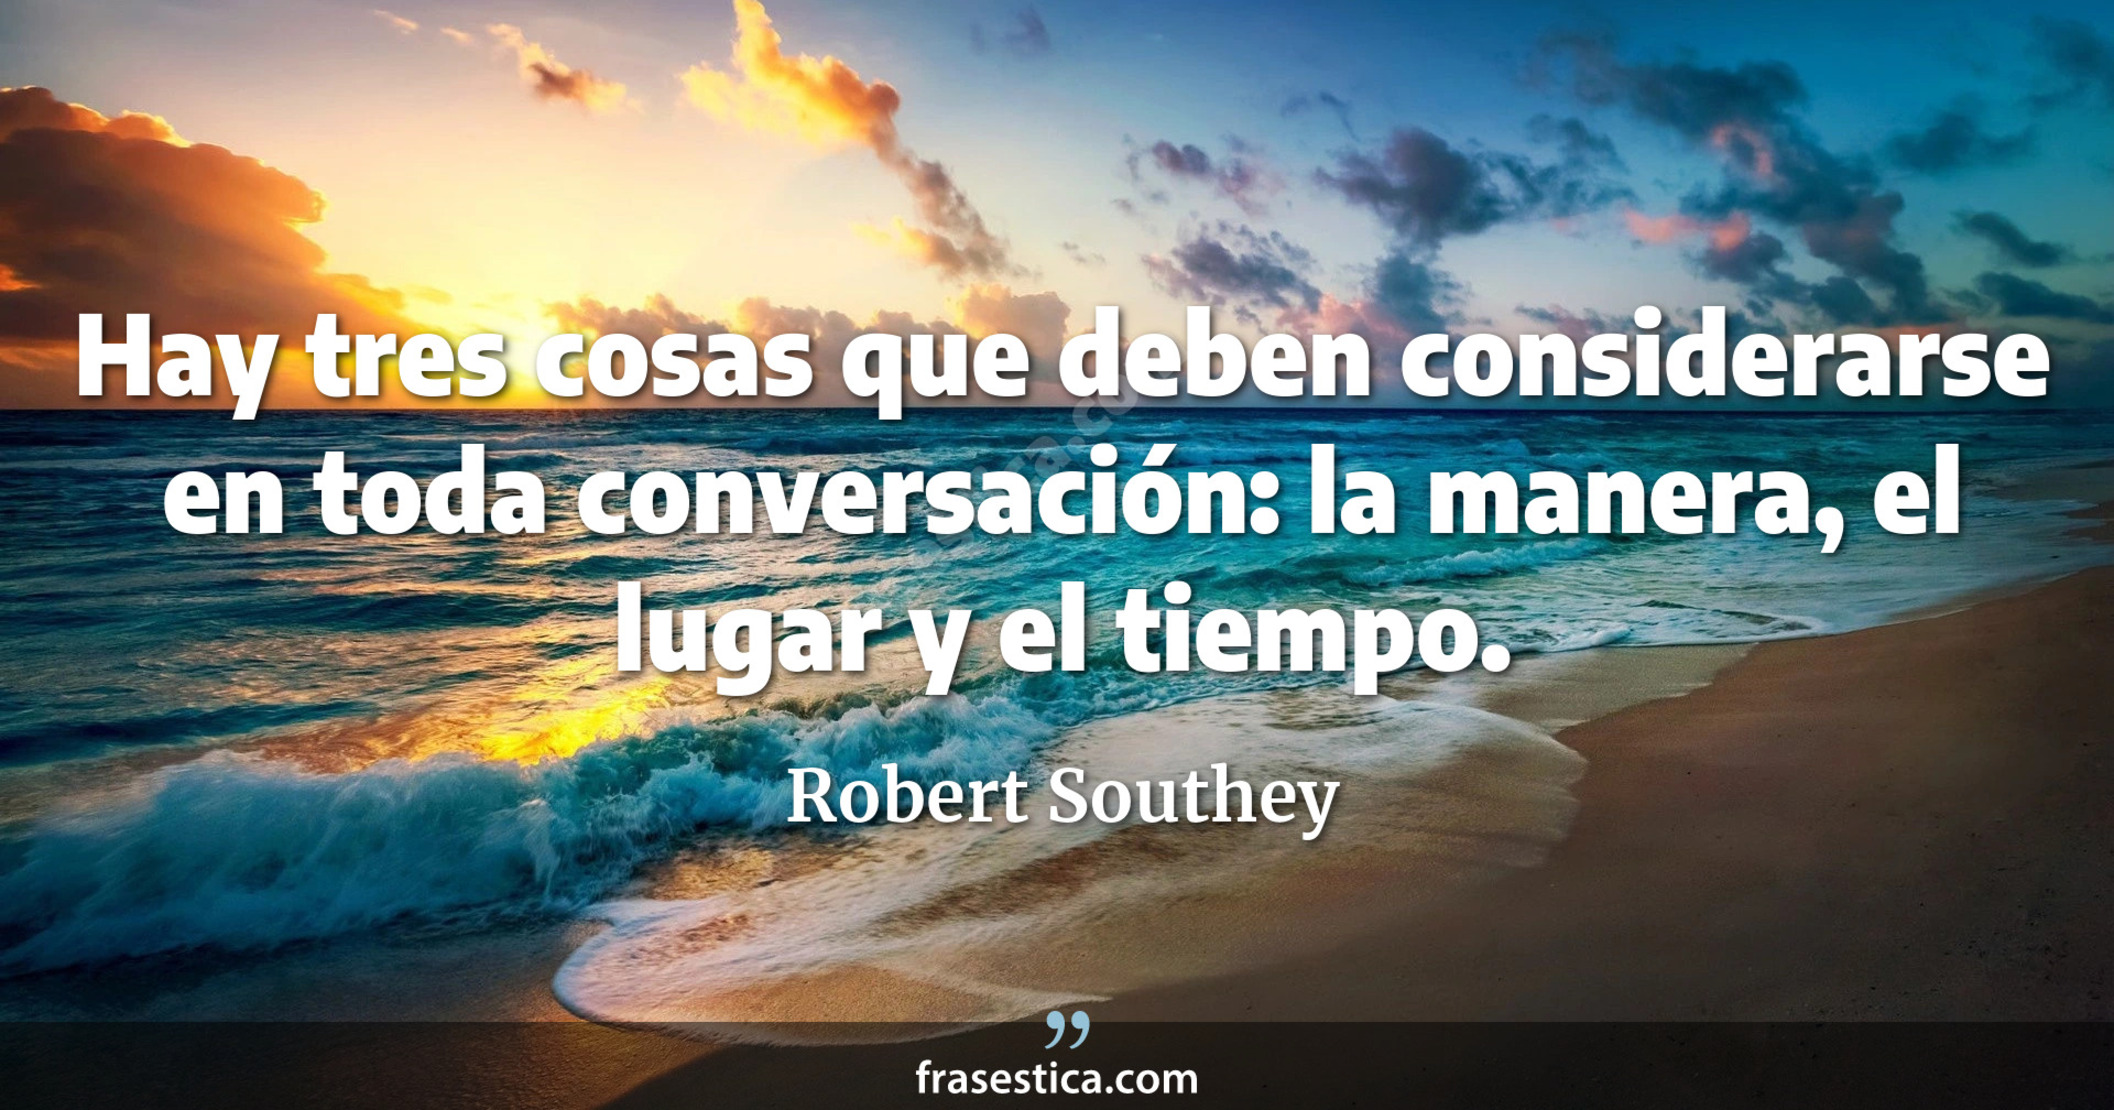 Hay tres cosas que deben considerarse en toda conversación: la manera, el lugar y el tiempo. - Robert Southey